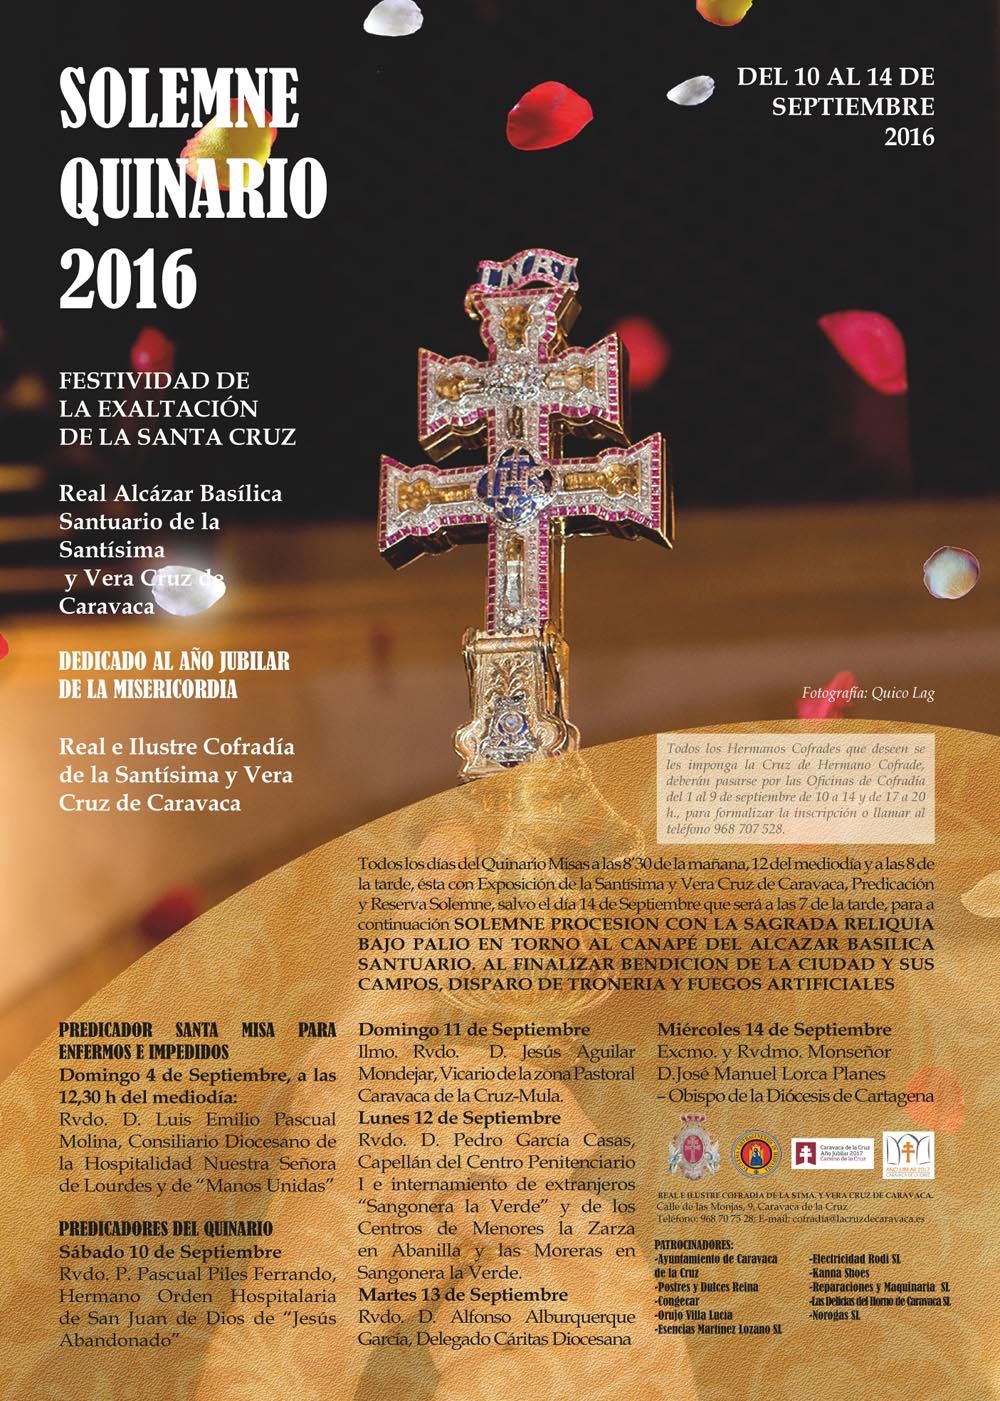 El Año Jubilar de la Misericordia tiene presencia en el Solemne Quinario de Exaltación de la Santísima y Vera Cruz de Caravaca 2016